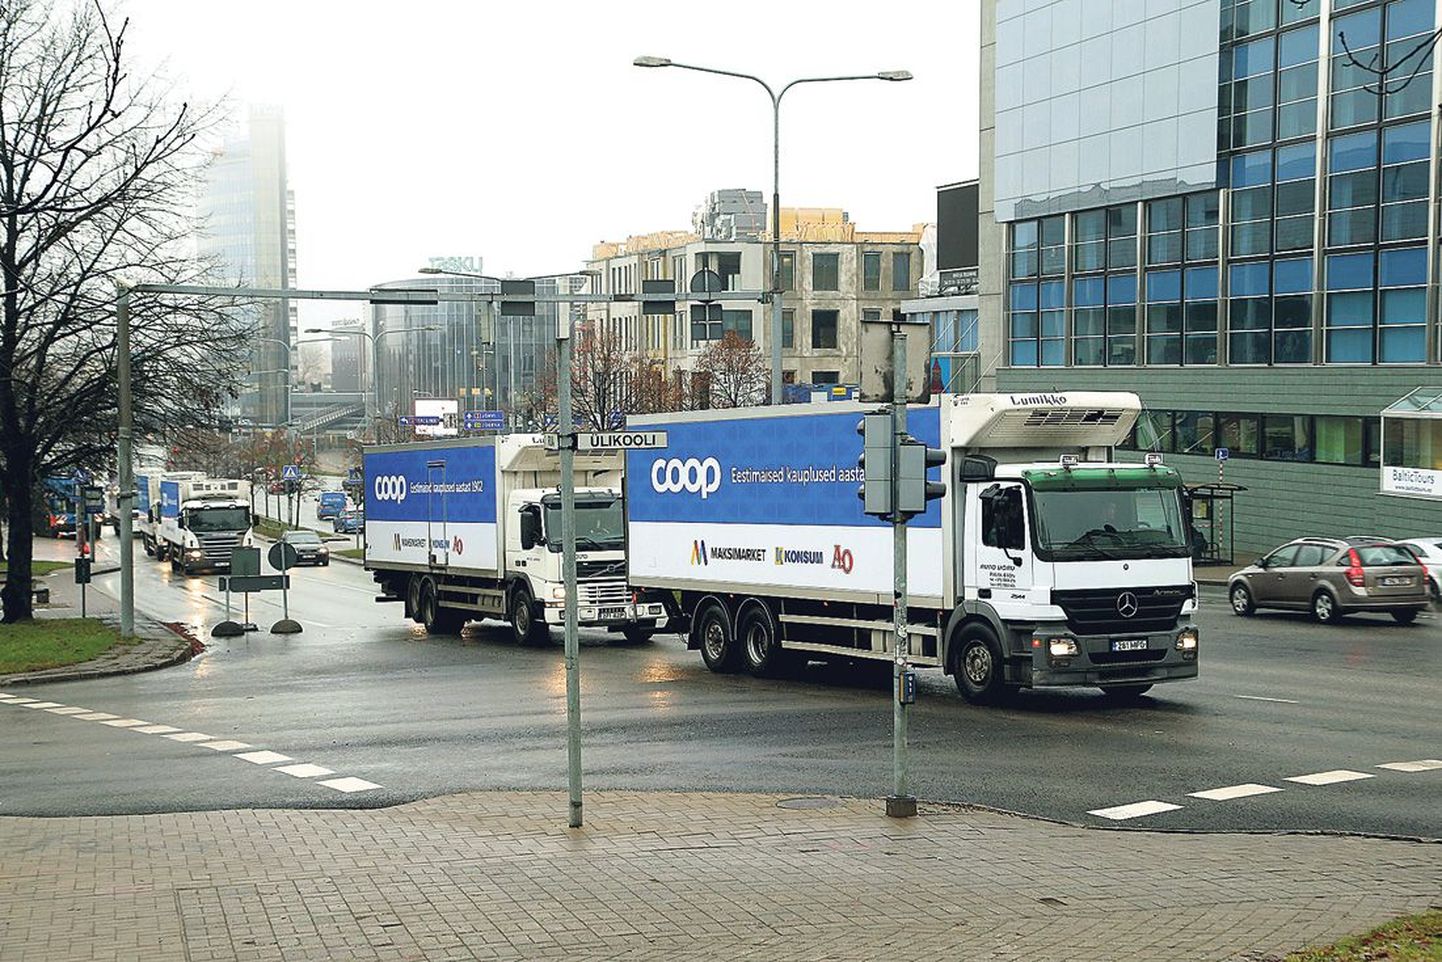 ETK uut nime Coop reklaamisid eile viis veoautot, mis sõitsid Eedeni parklast kesklinna kaudu Lõunakeskuse juurde.